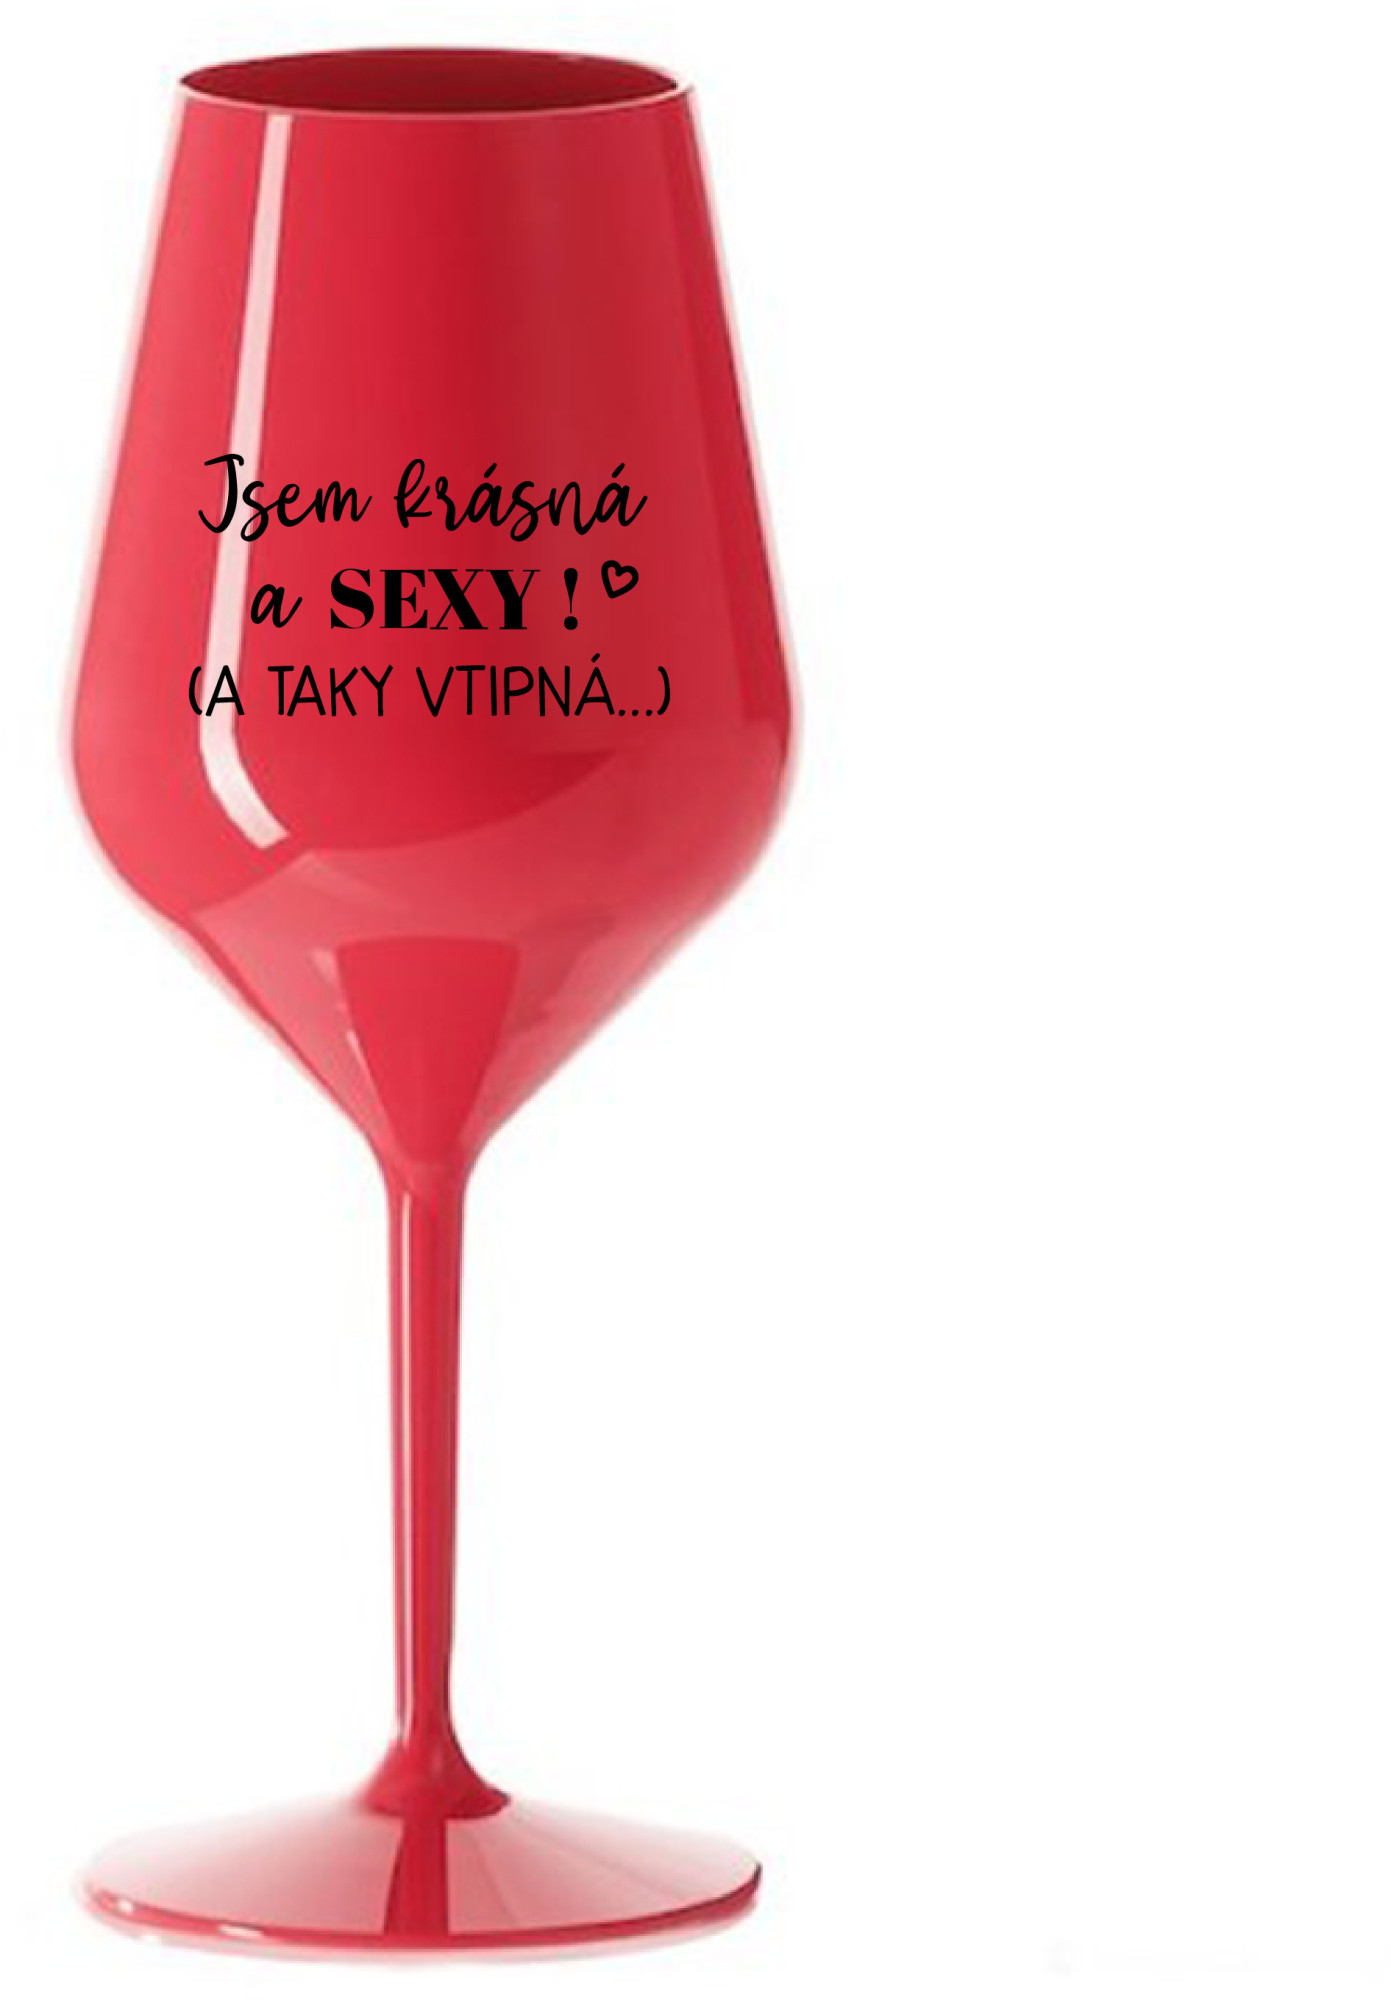 JSEM KRÁSNÁ A SEXY! (A TAKY VTIPNÁ...) - červená nerozbitná sklenice na víno 470 ml